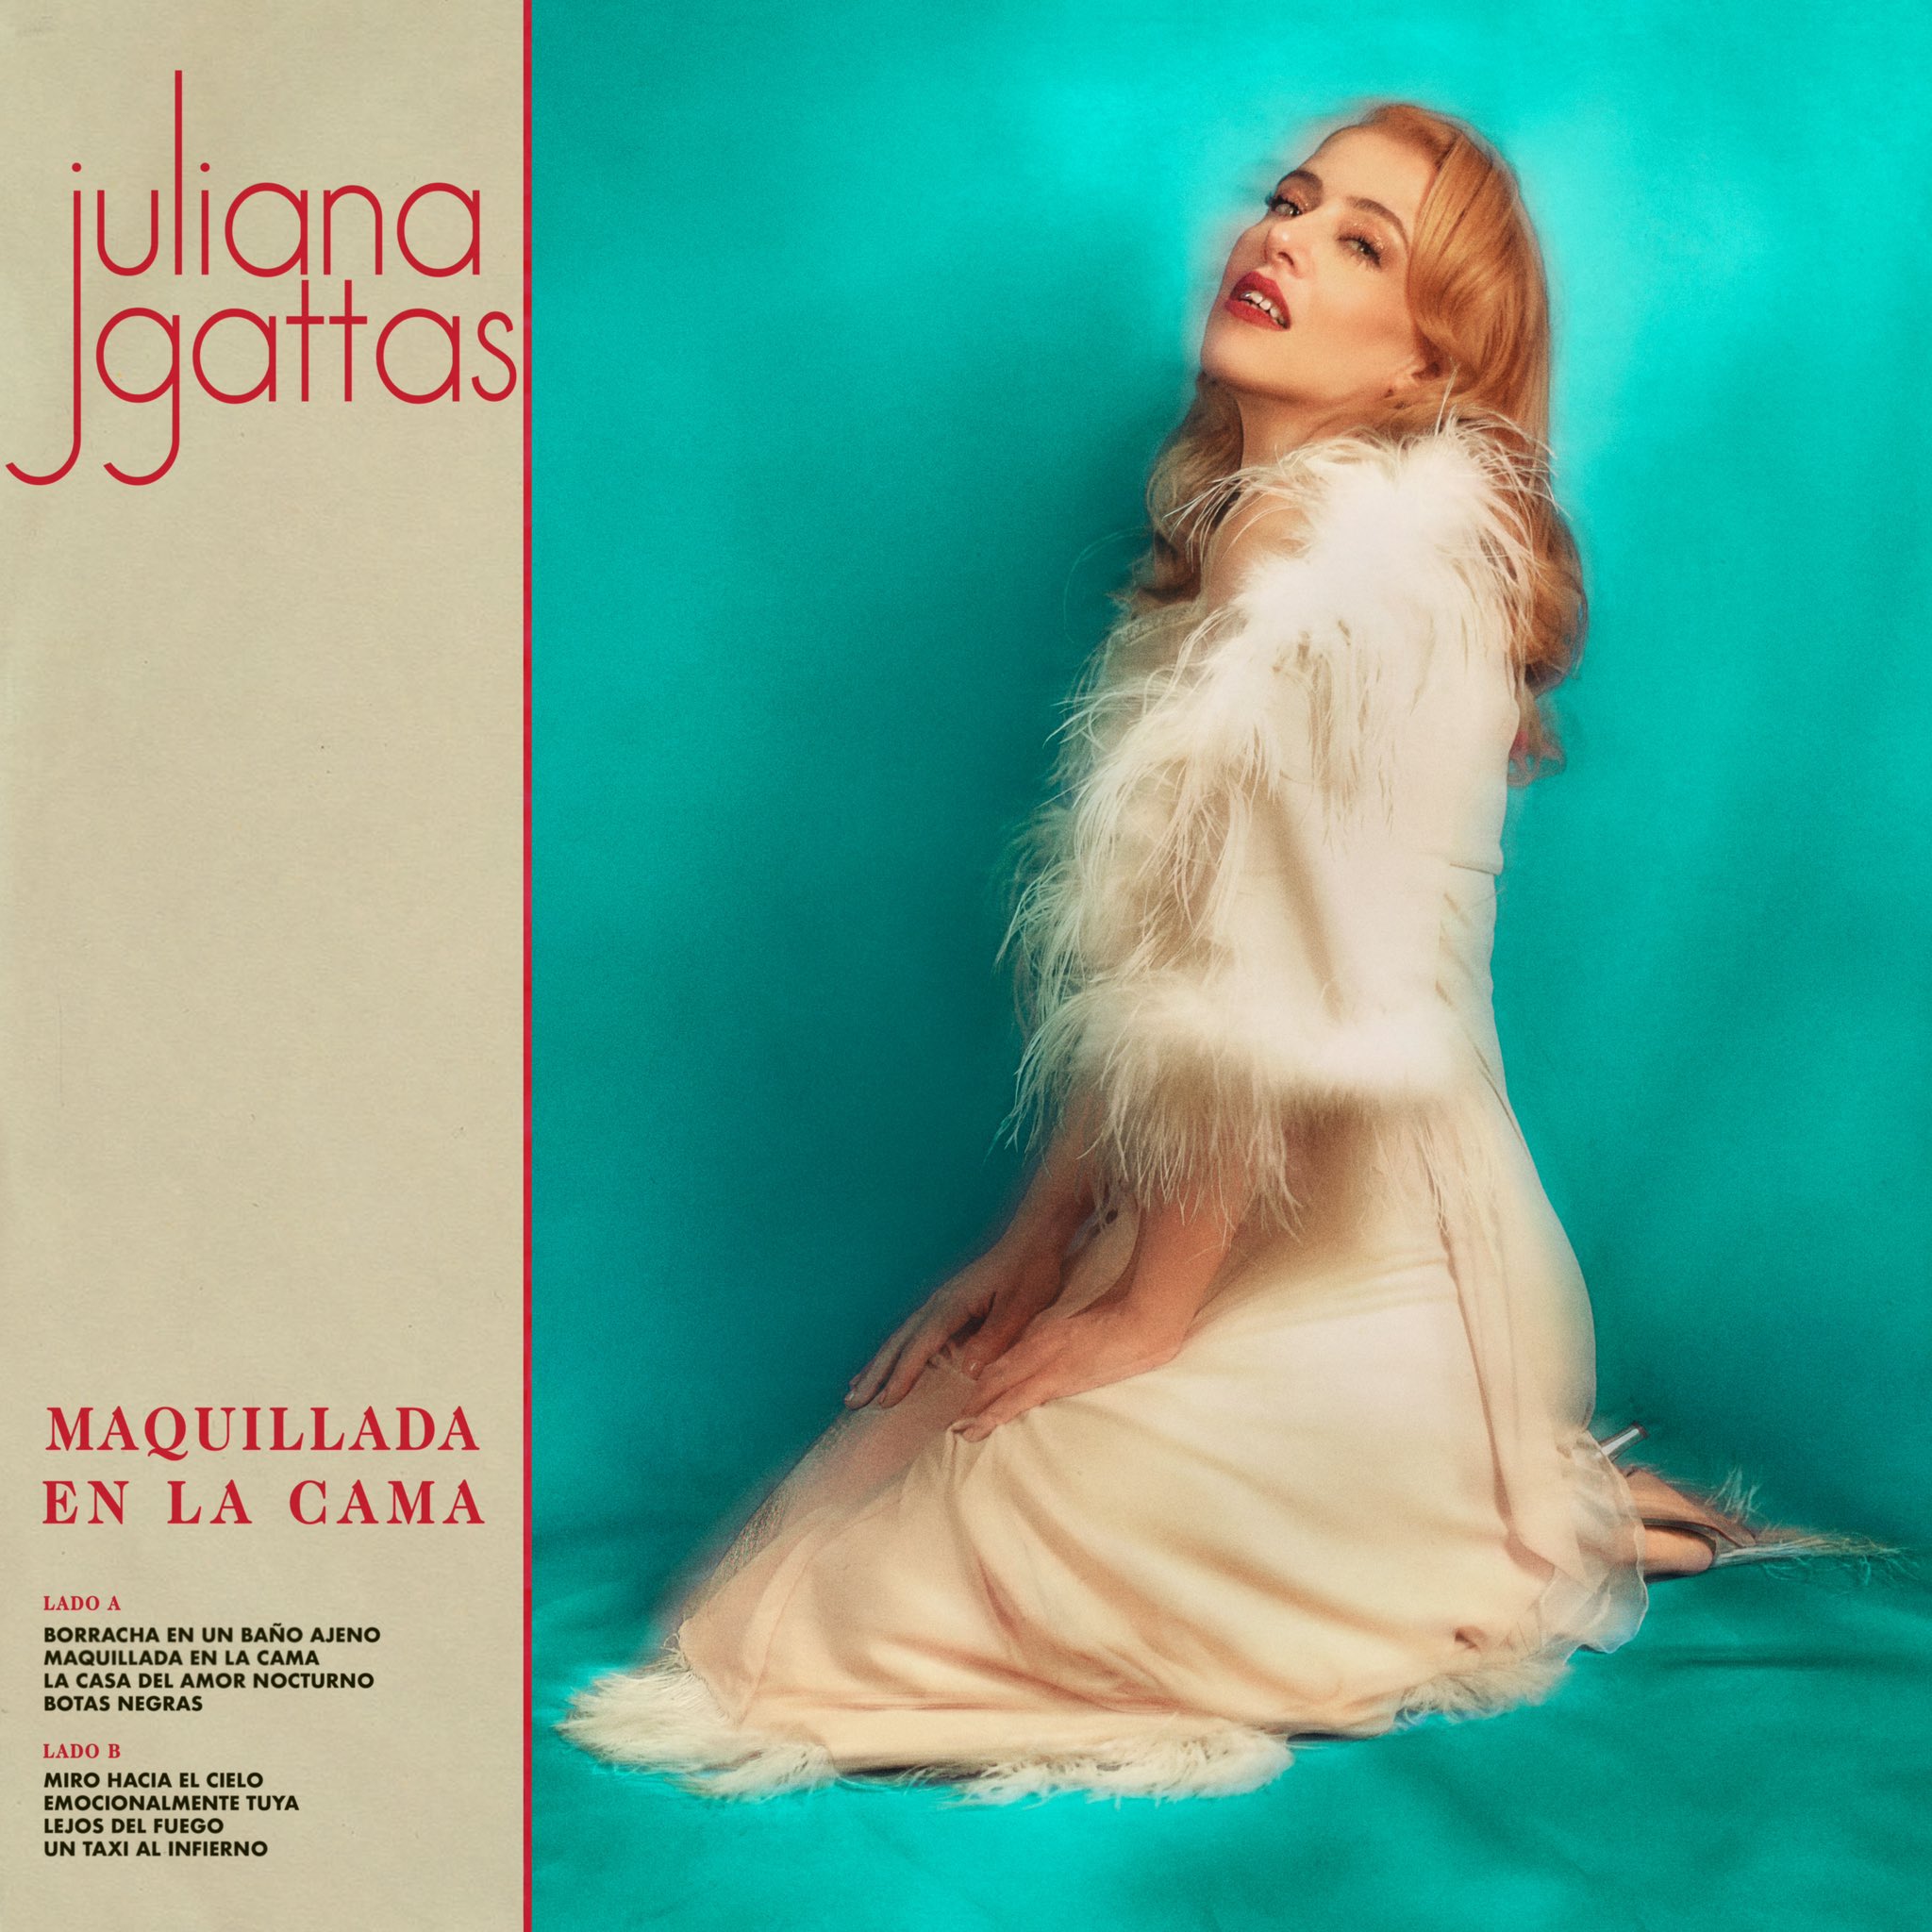 Juliana Gattas Maquillada en la cama cover artwork